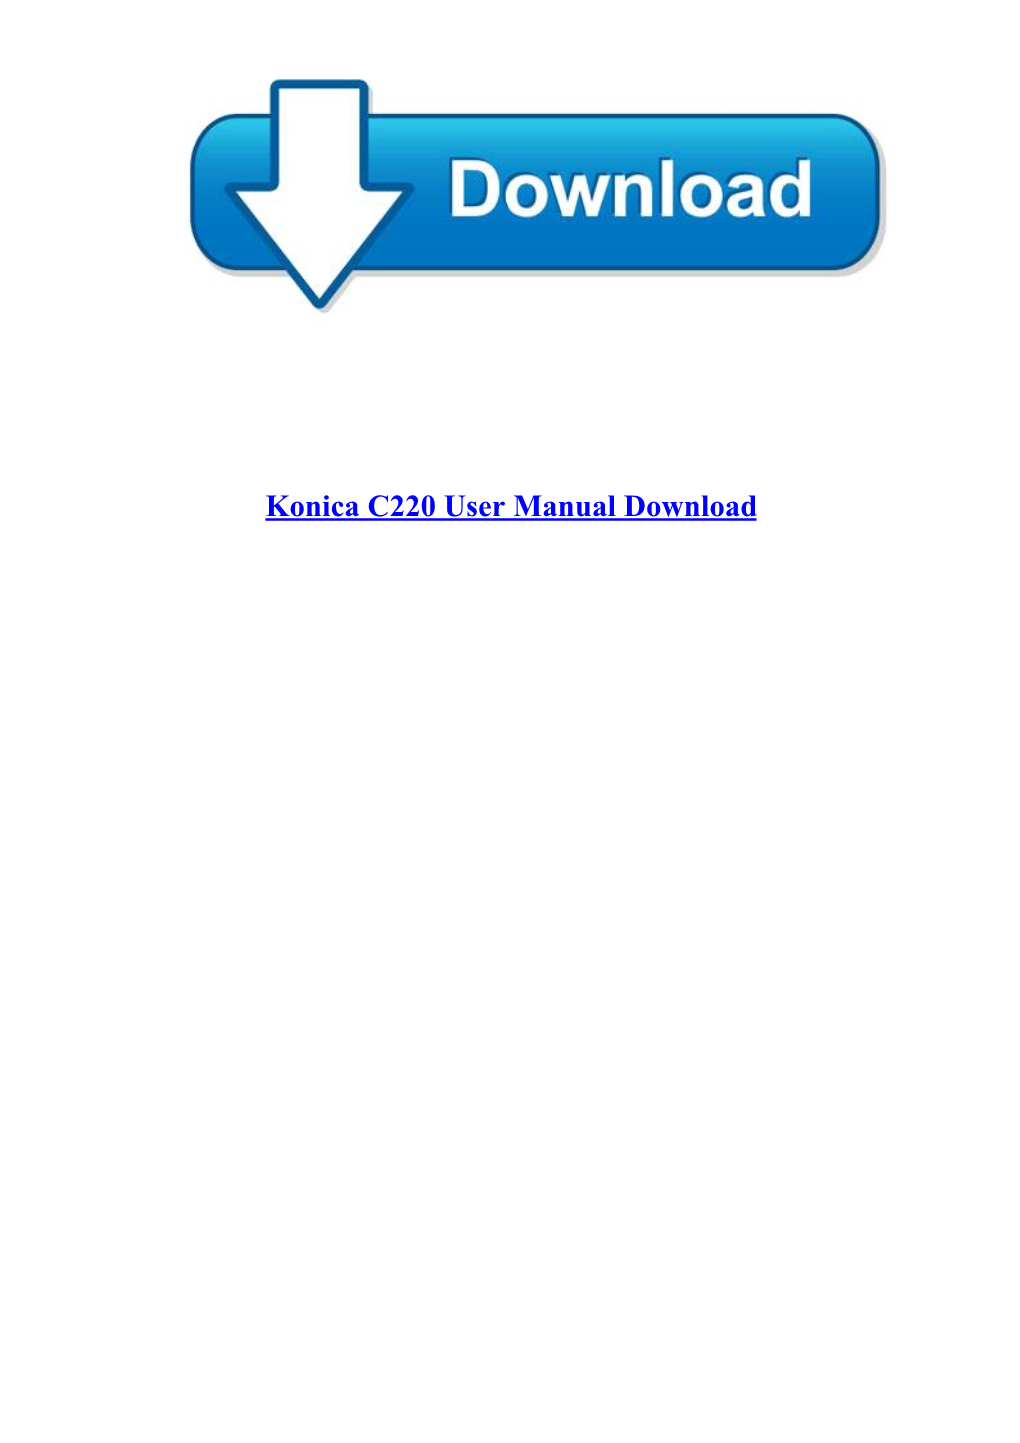 Konica C220 User Manual Download Konica C220 User Manual